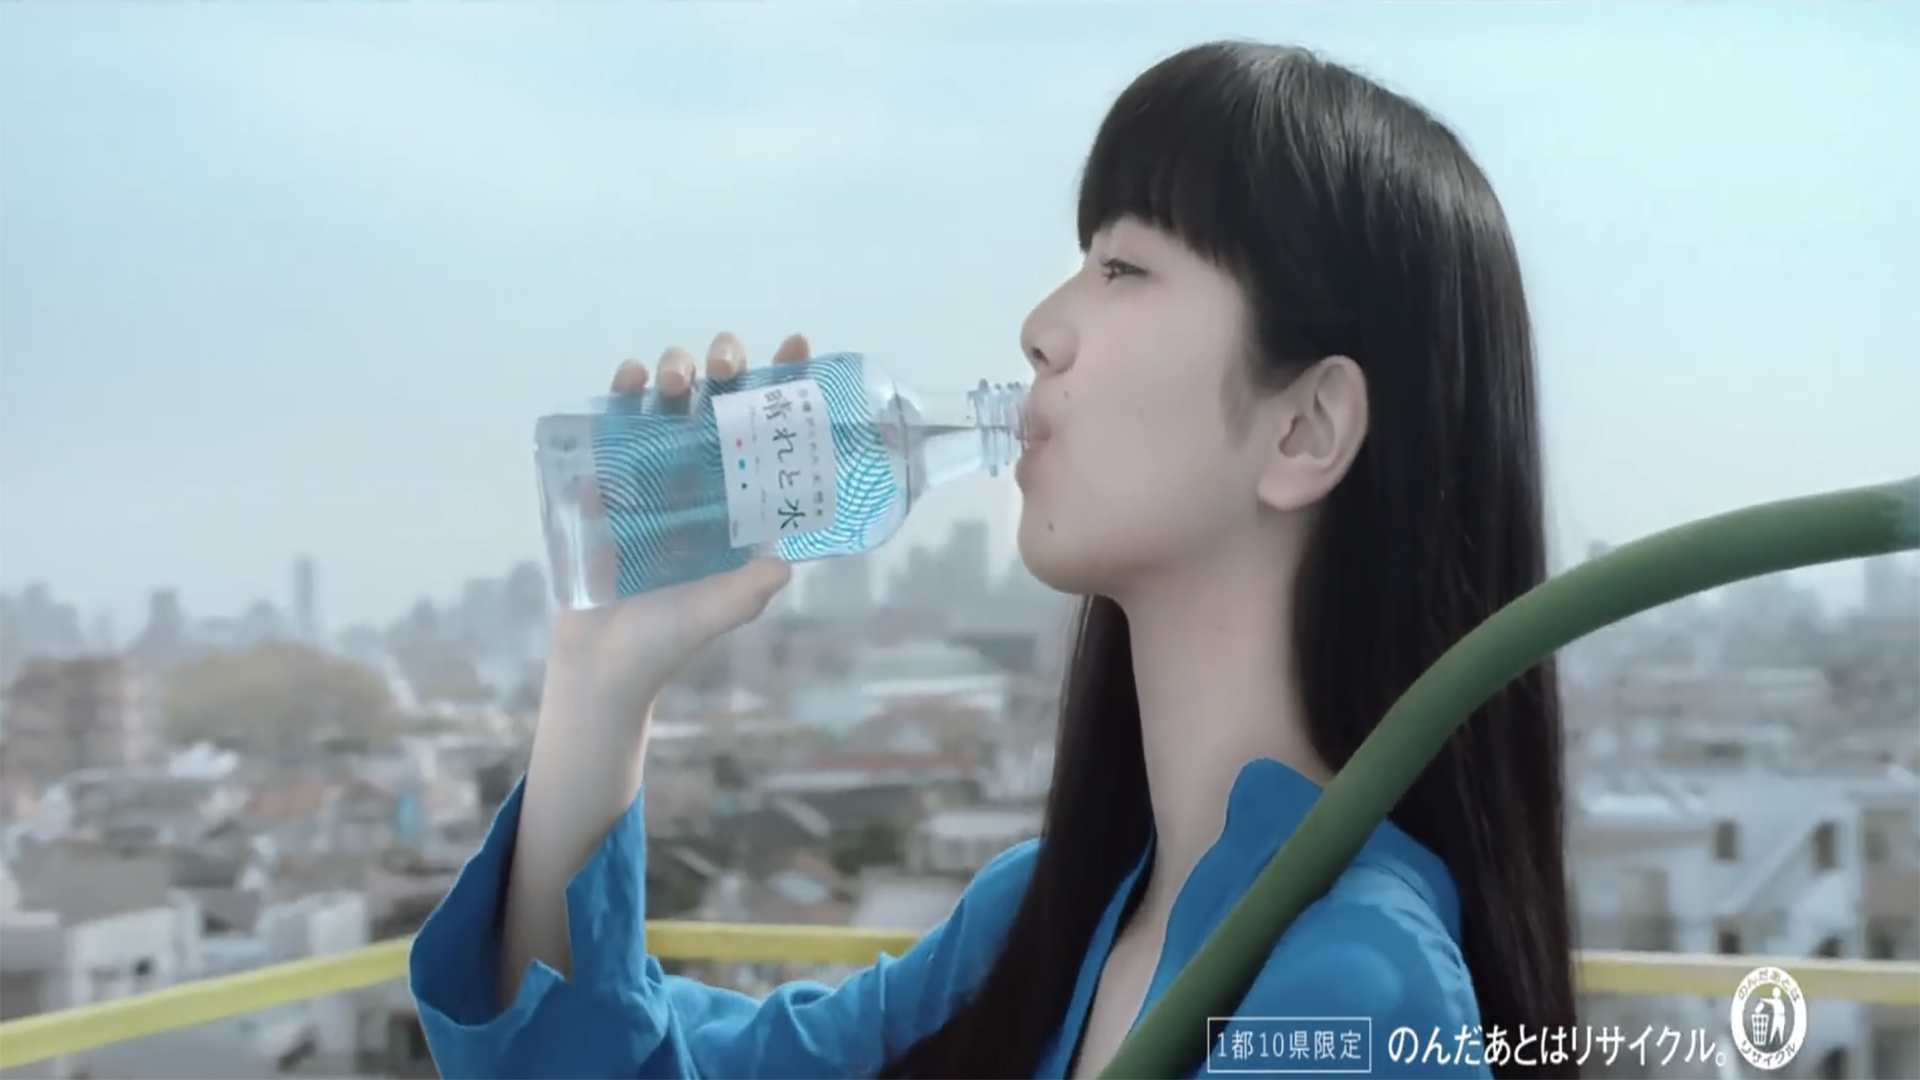 【日本・广告】小松菜奈 出演 KIRIN 最新「晴天与水」矿泉水广告